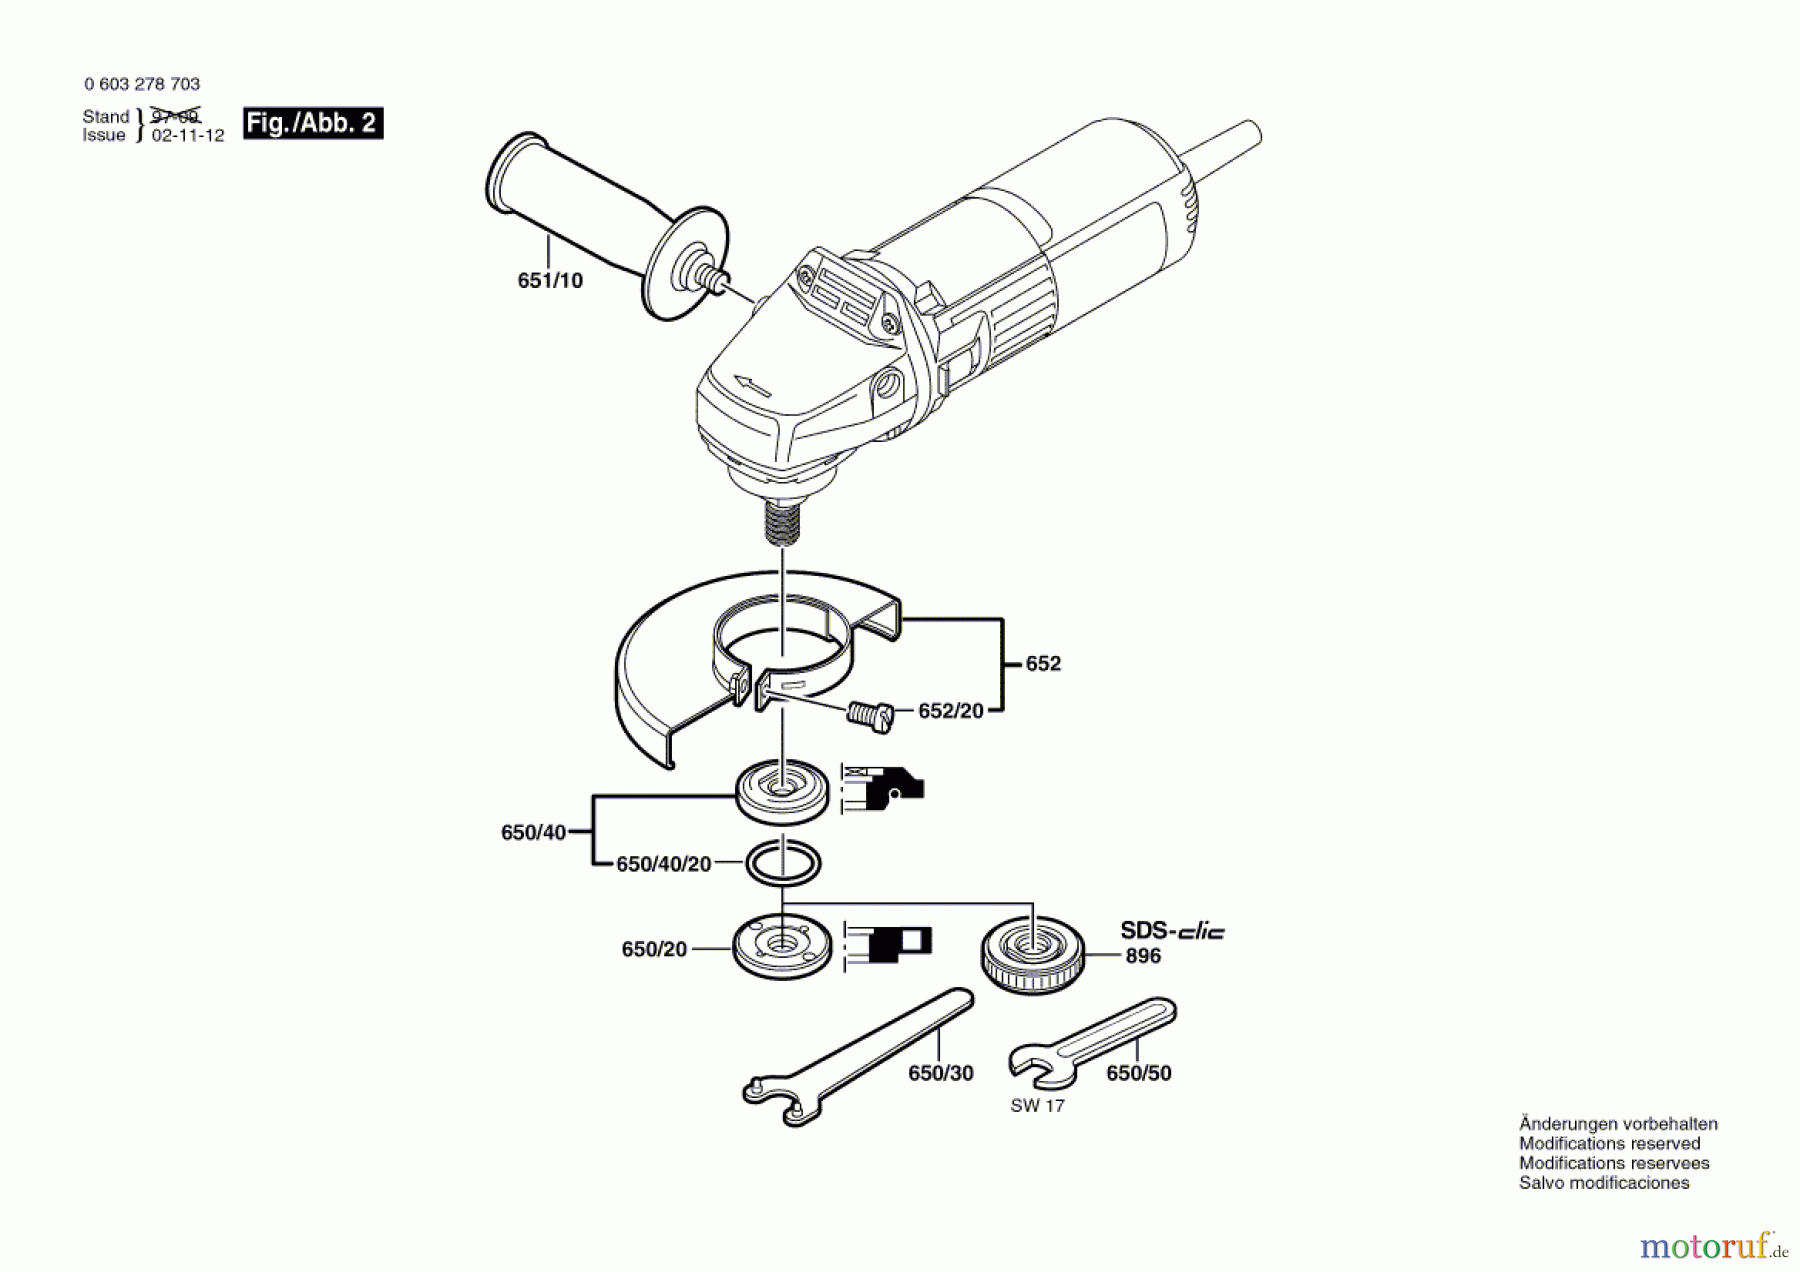  Bosch Werkzeug Winkelschleifer PWS 7-115 E Seite 2